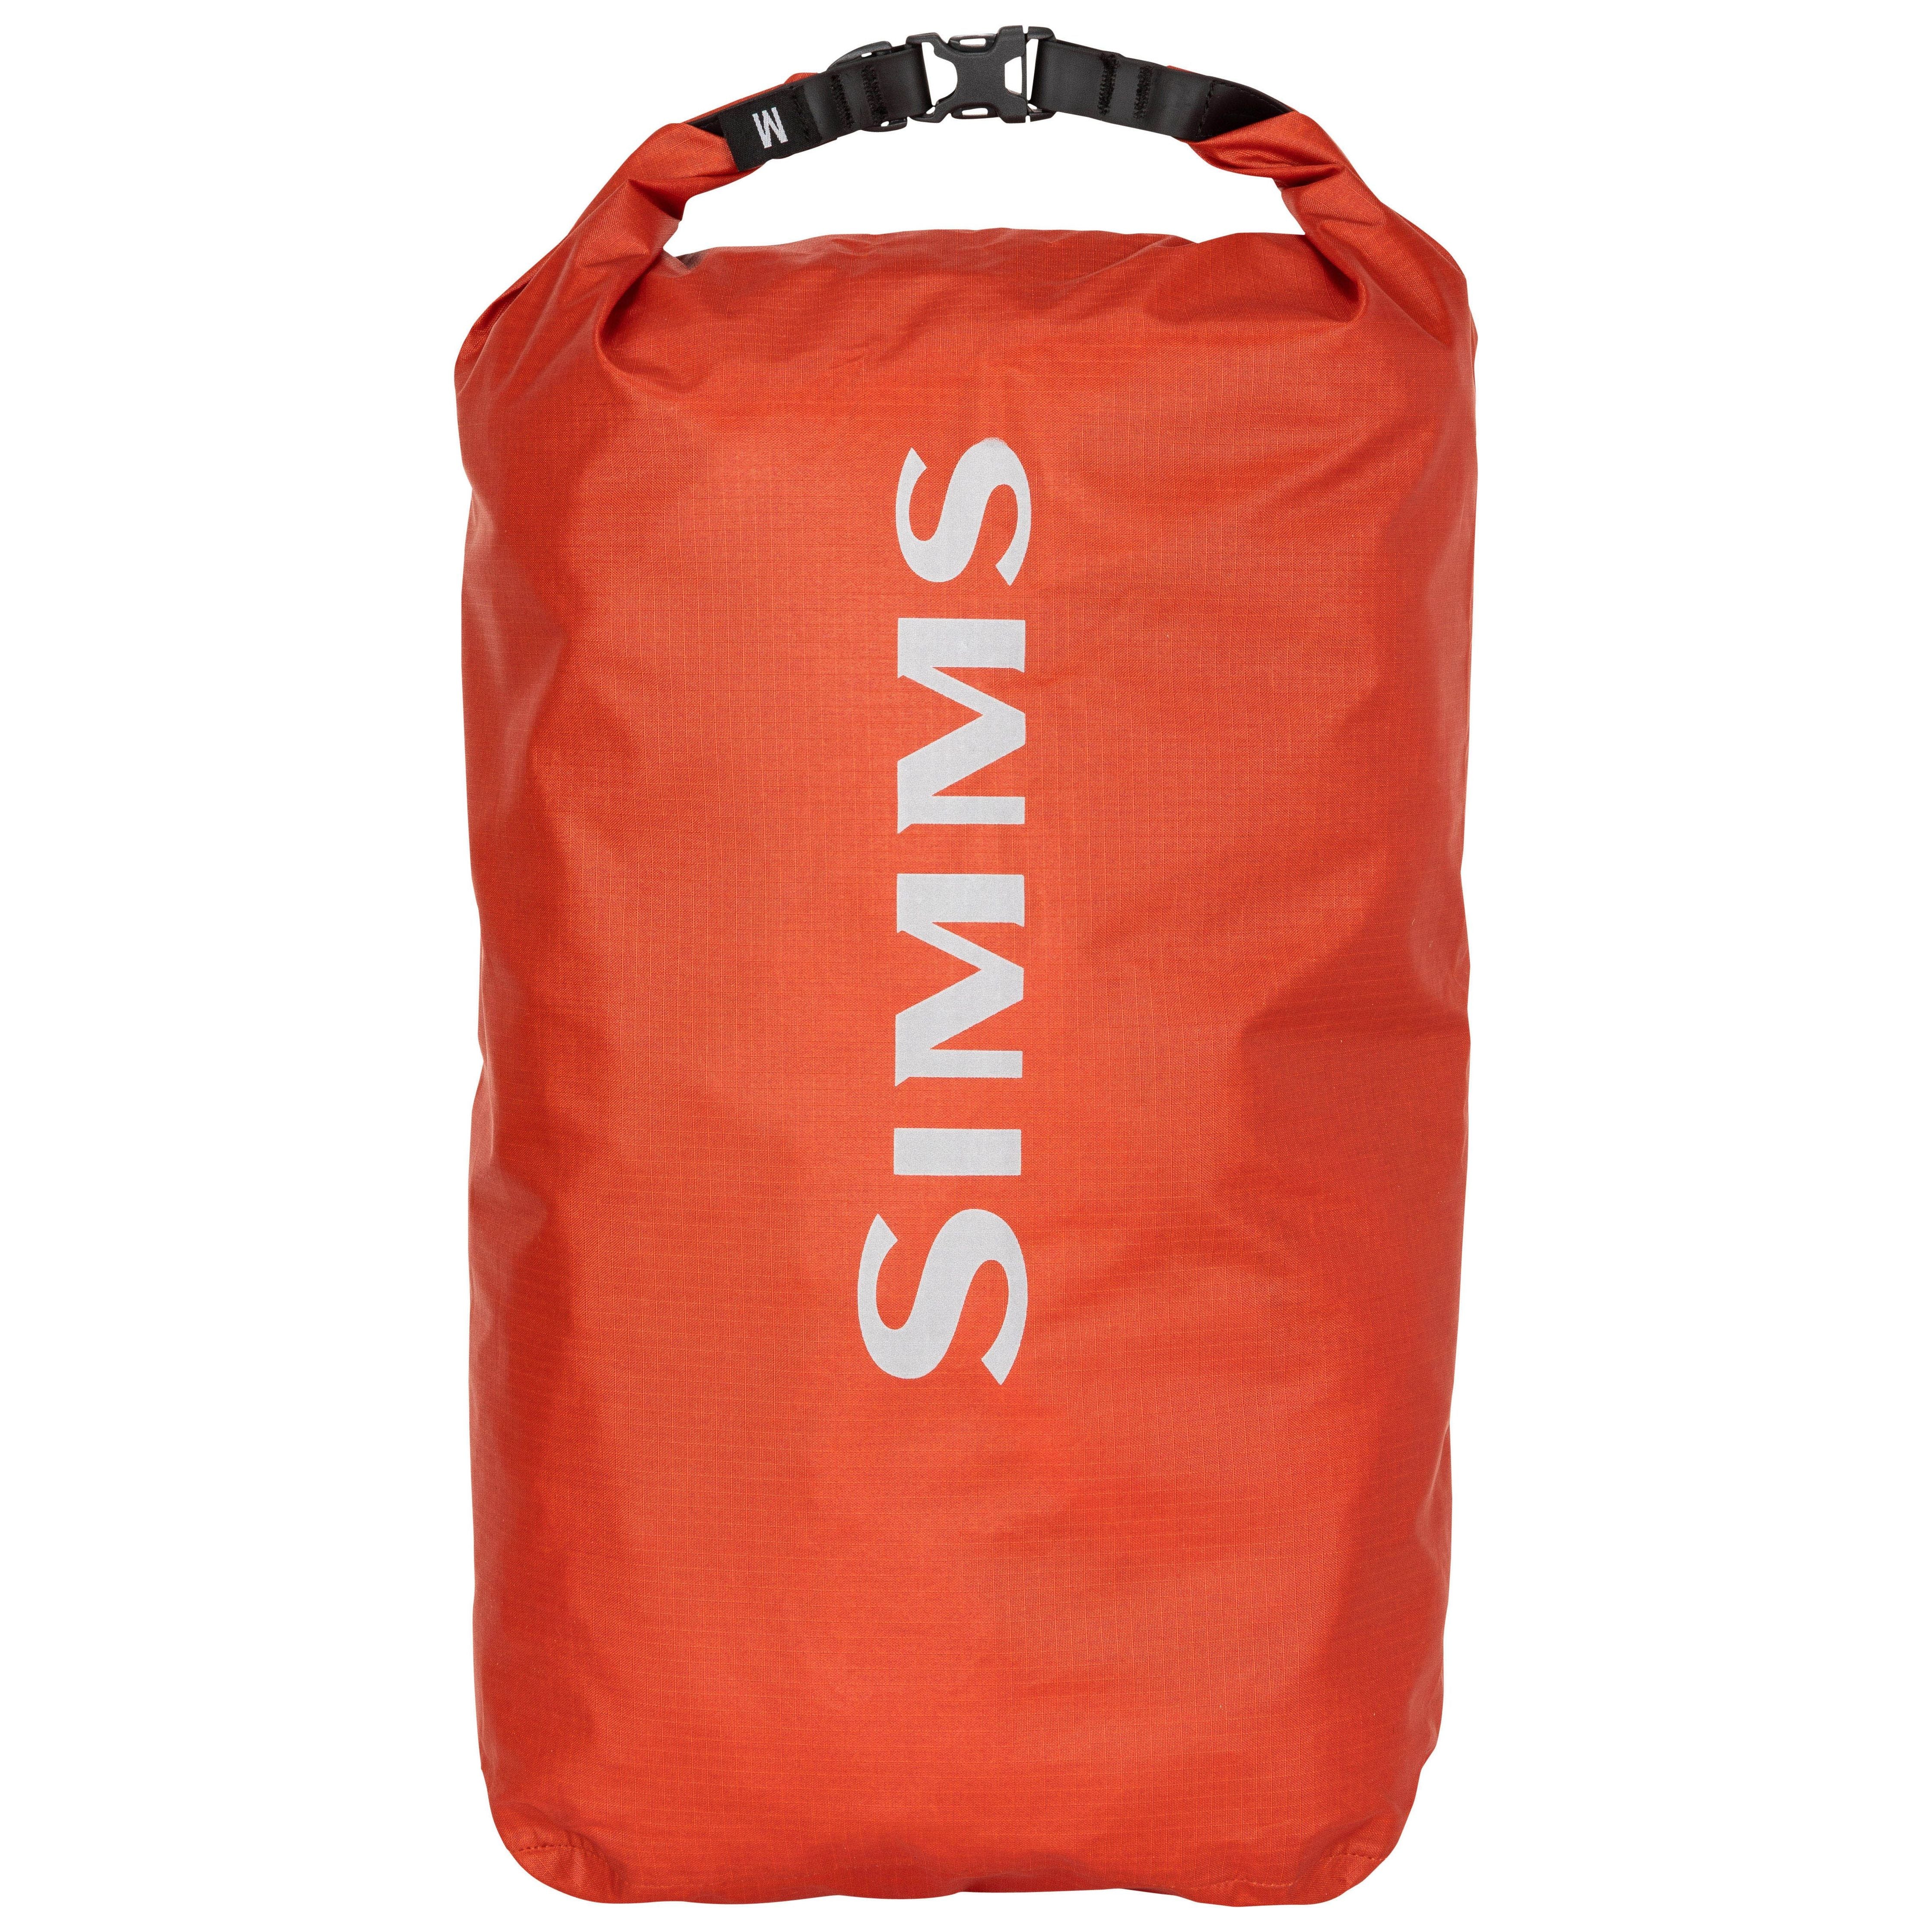 Simms Dry Creek Dry Bag Medium Simms Orange Image 01